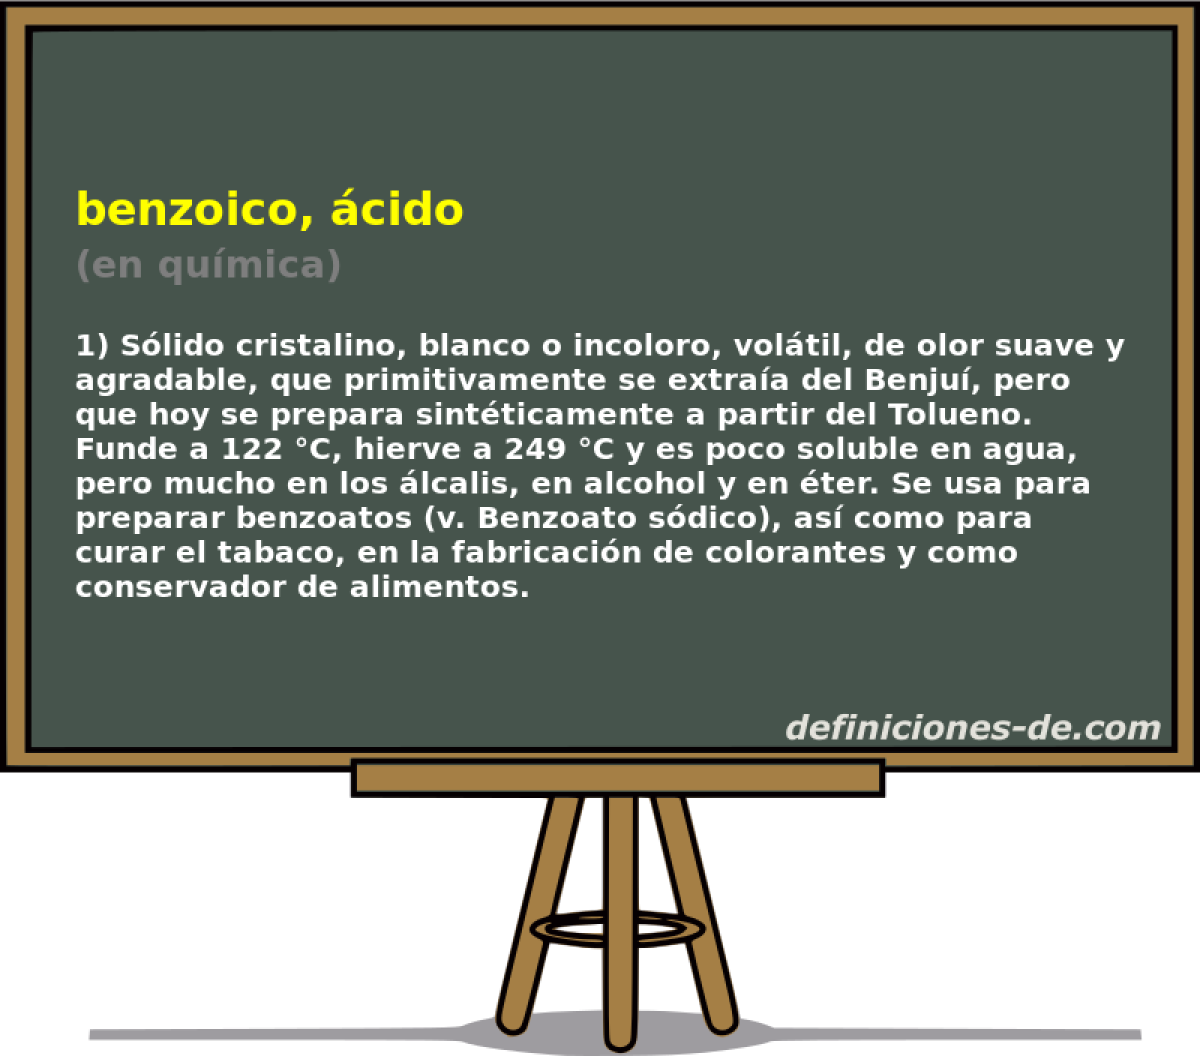 benzoico, cido (en qumica)